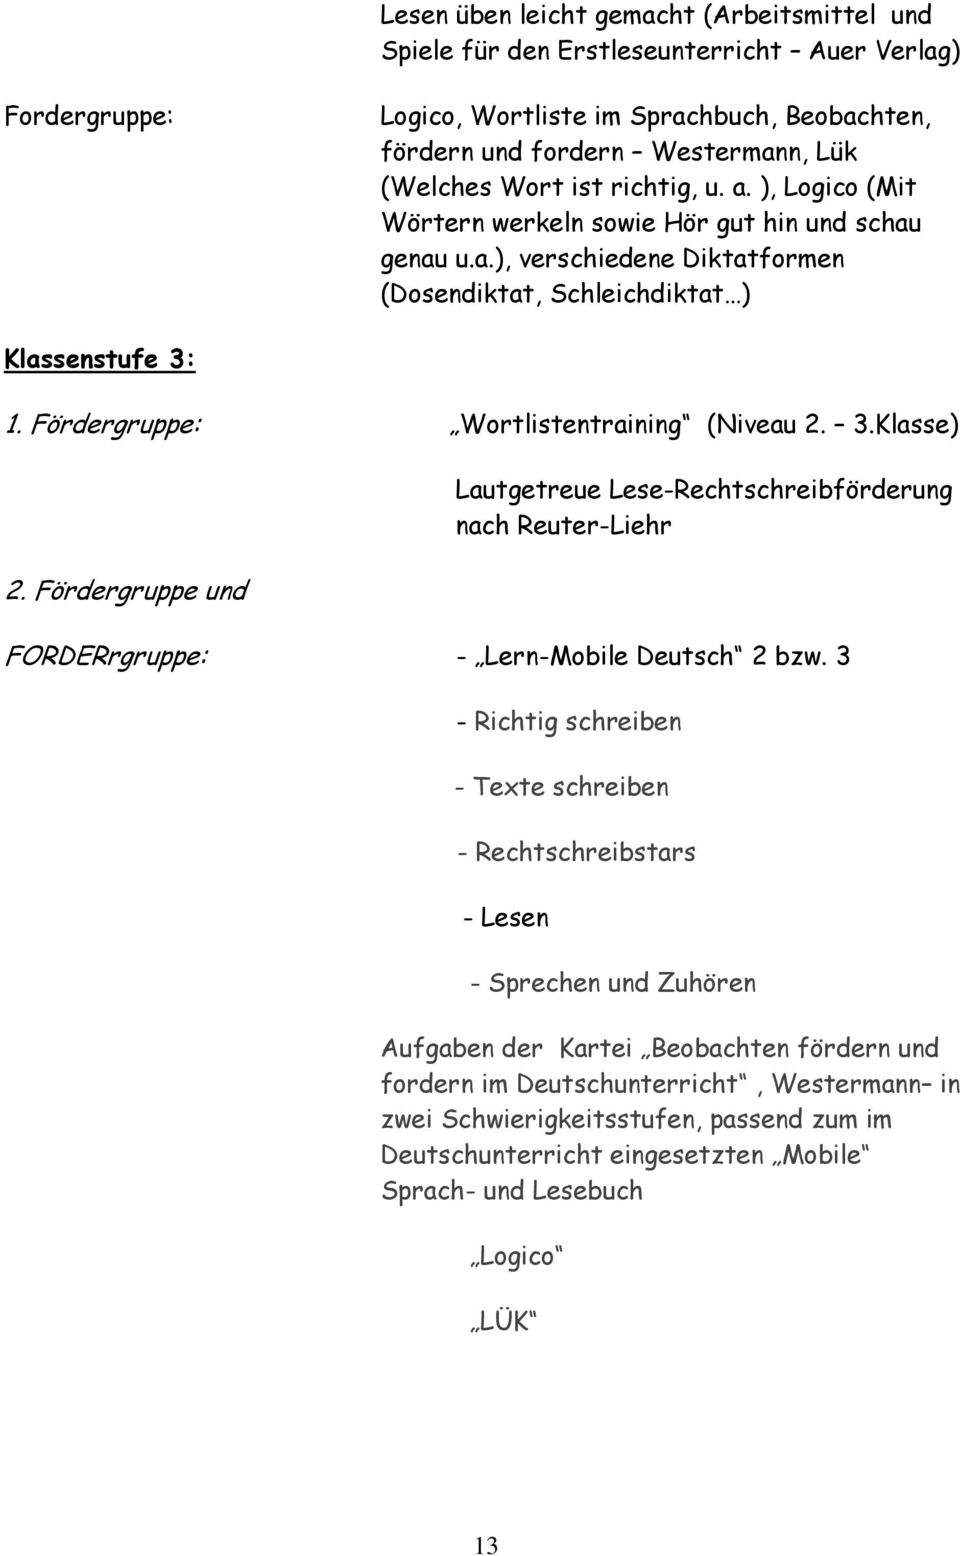 Fördergruppe: Wortlistentraining (Niveau 2. 3.Klasse) 2. Fördergruppe und Lautgetreue Lese-Rechtschreibförderung nach Reuter-Liehr FORDERrgruppe: - Lern-Mobile Deutsch 2 bzw.